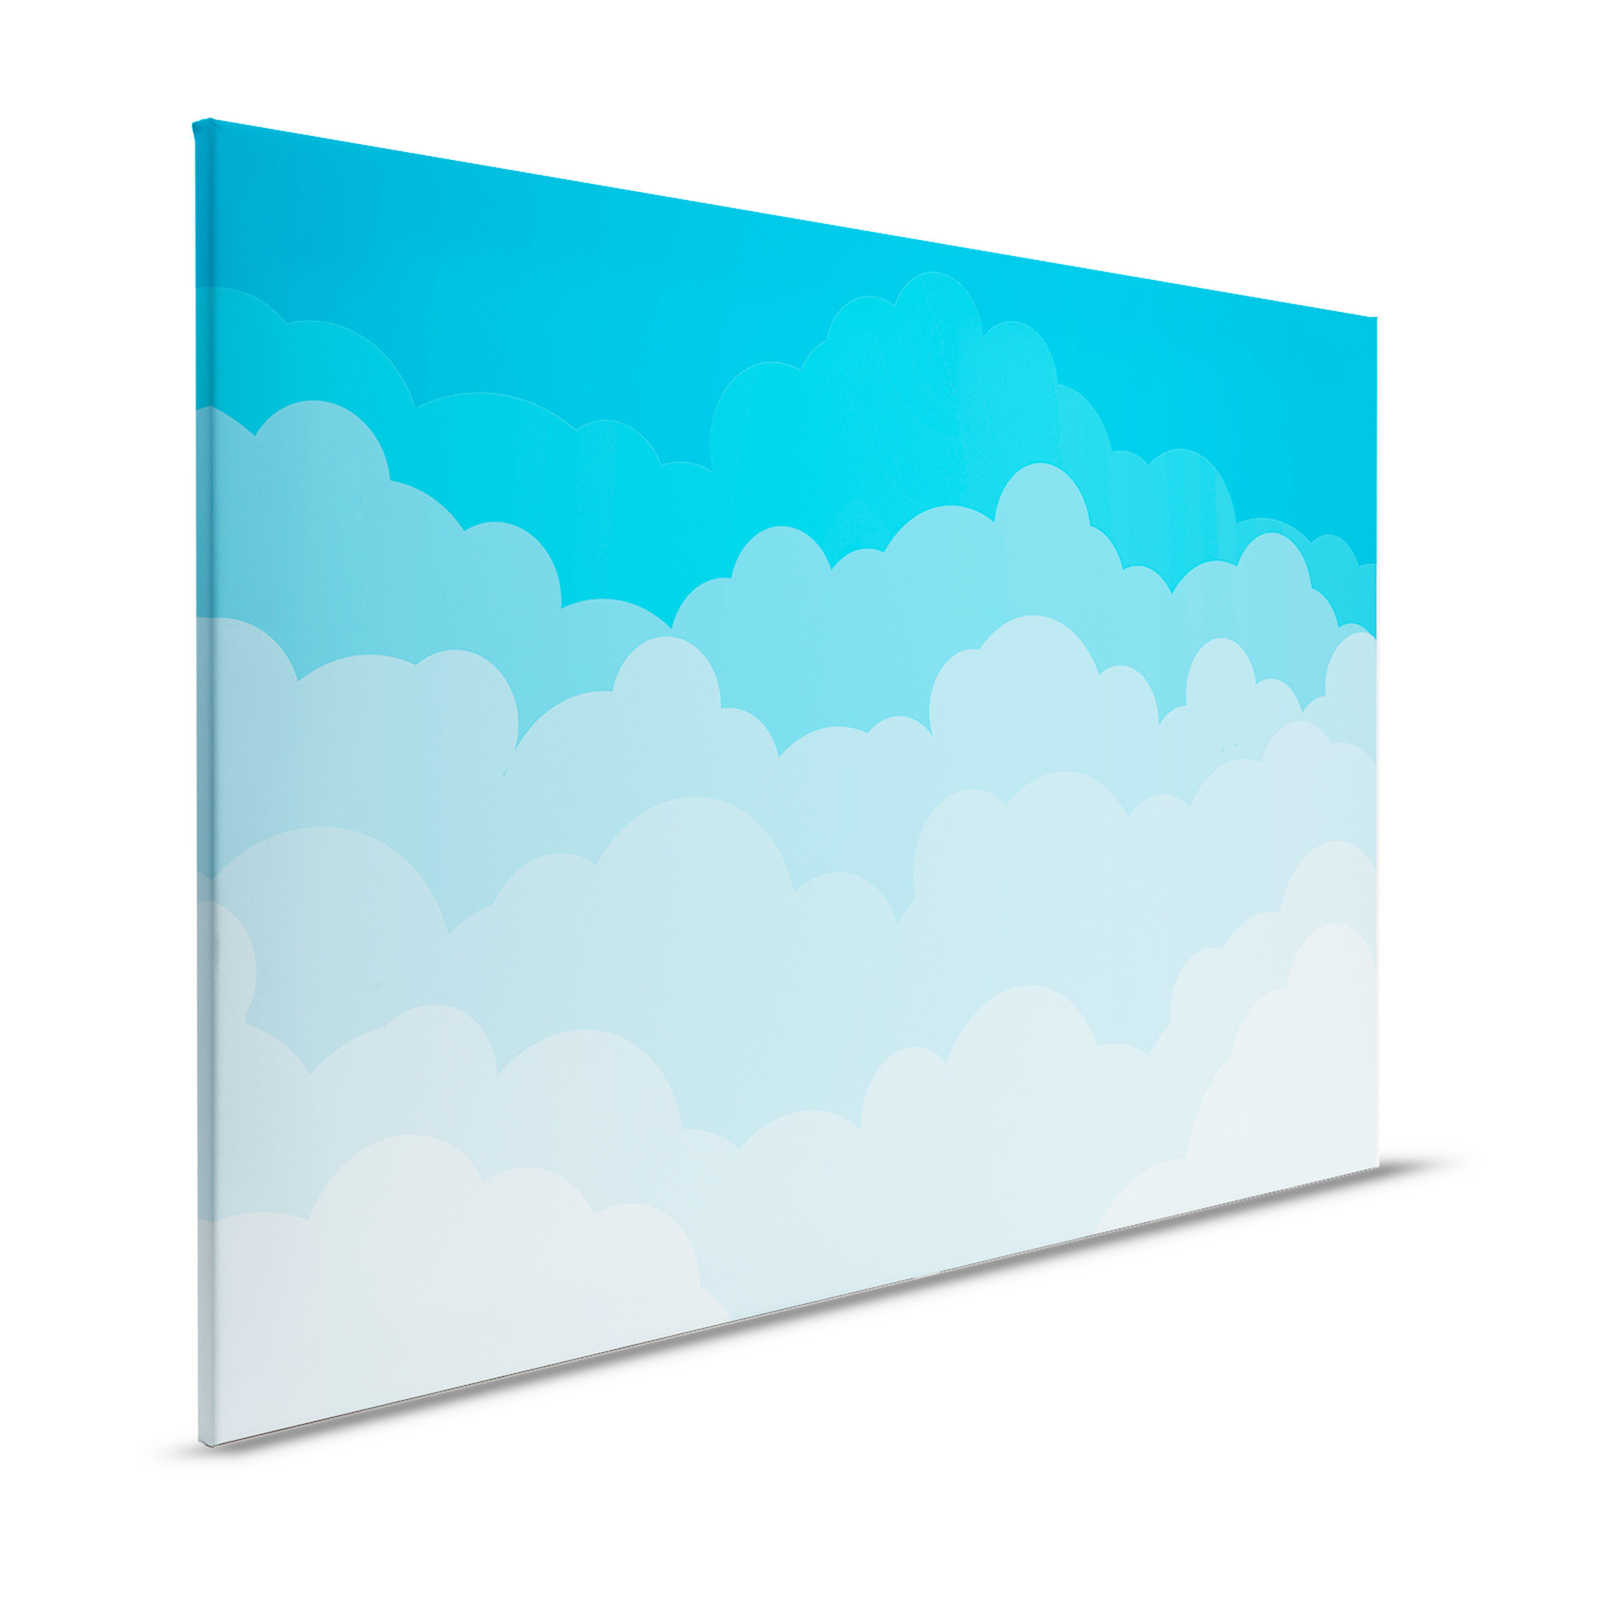 Leinwand Himmel mit Wolken im Comic-Stil – 120 cm x 80 cm
